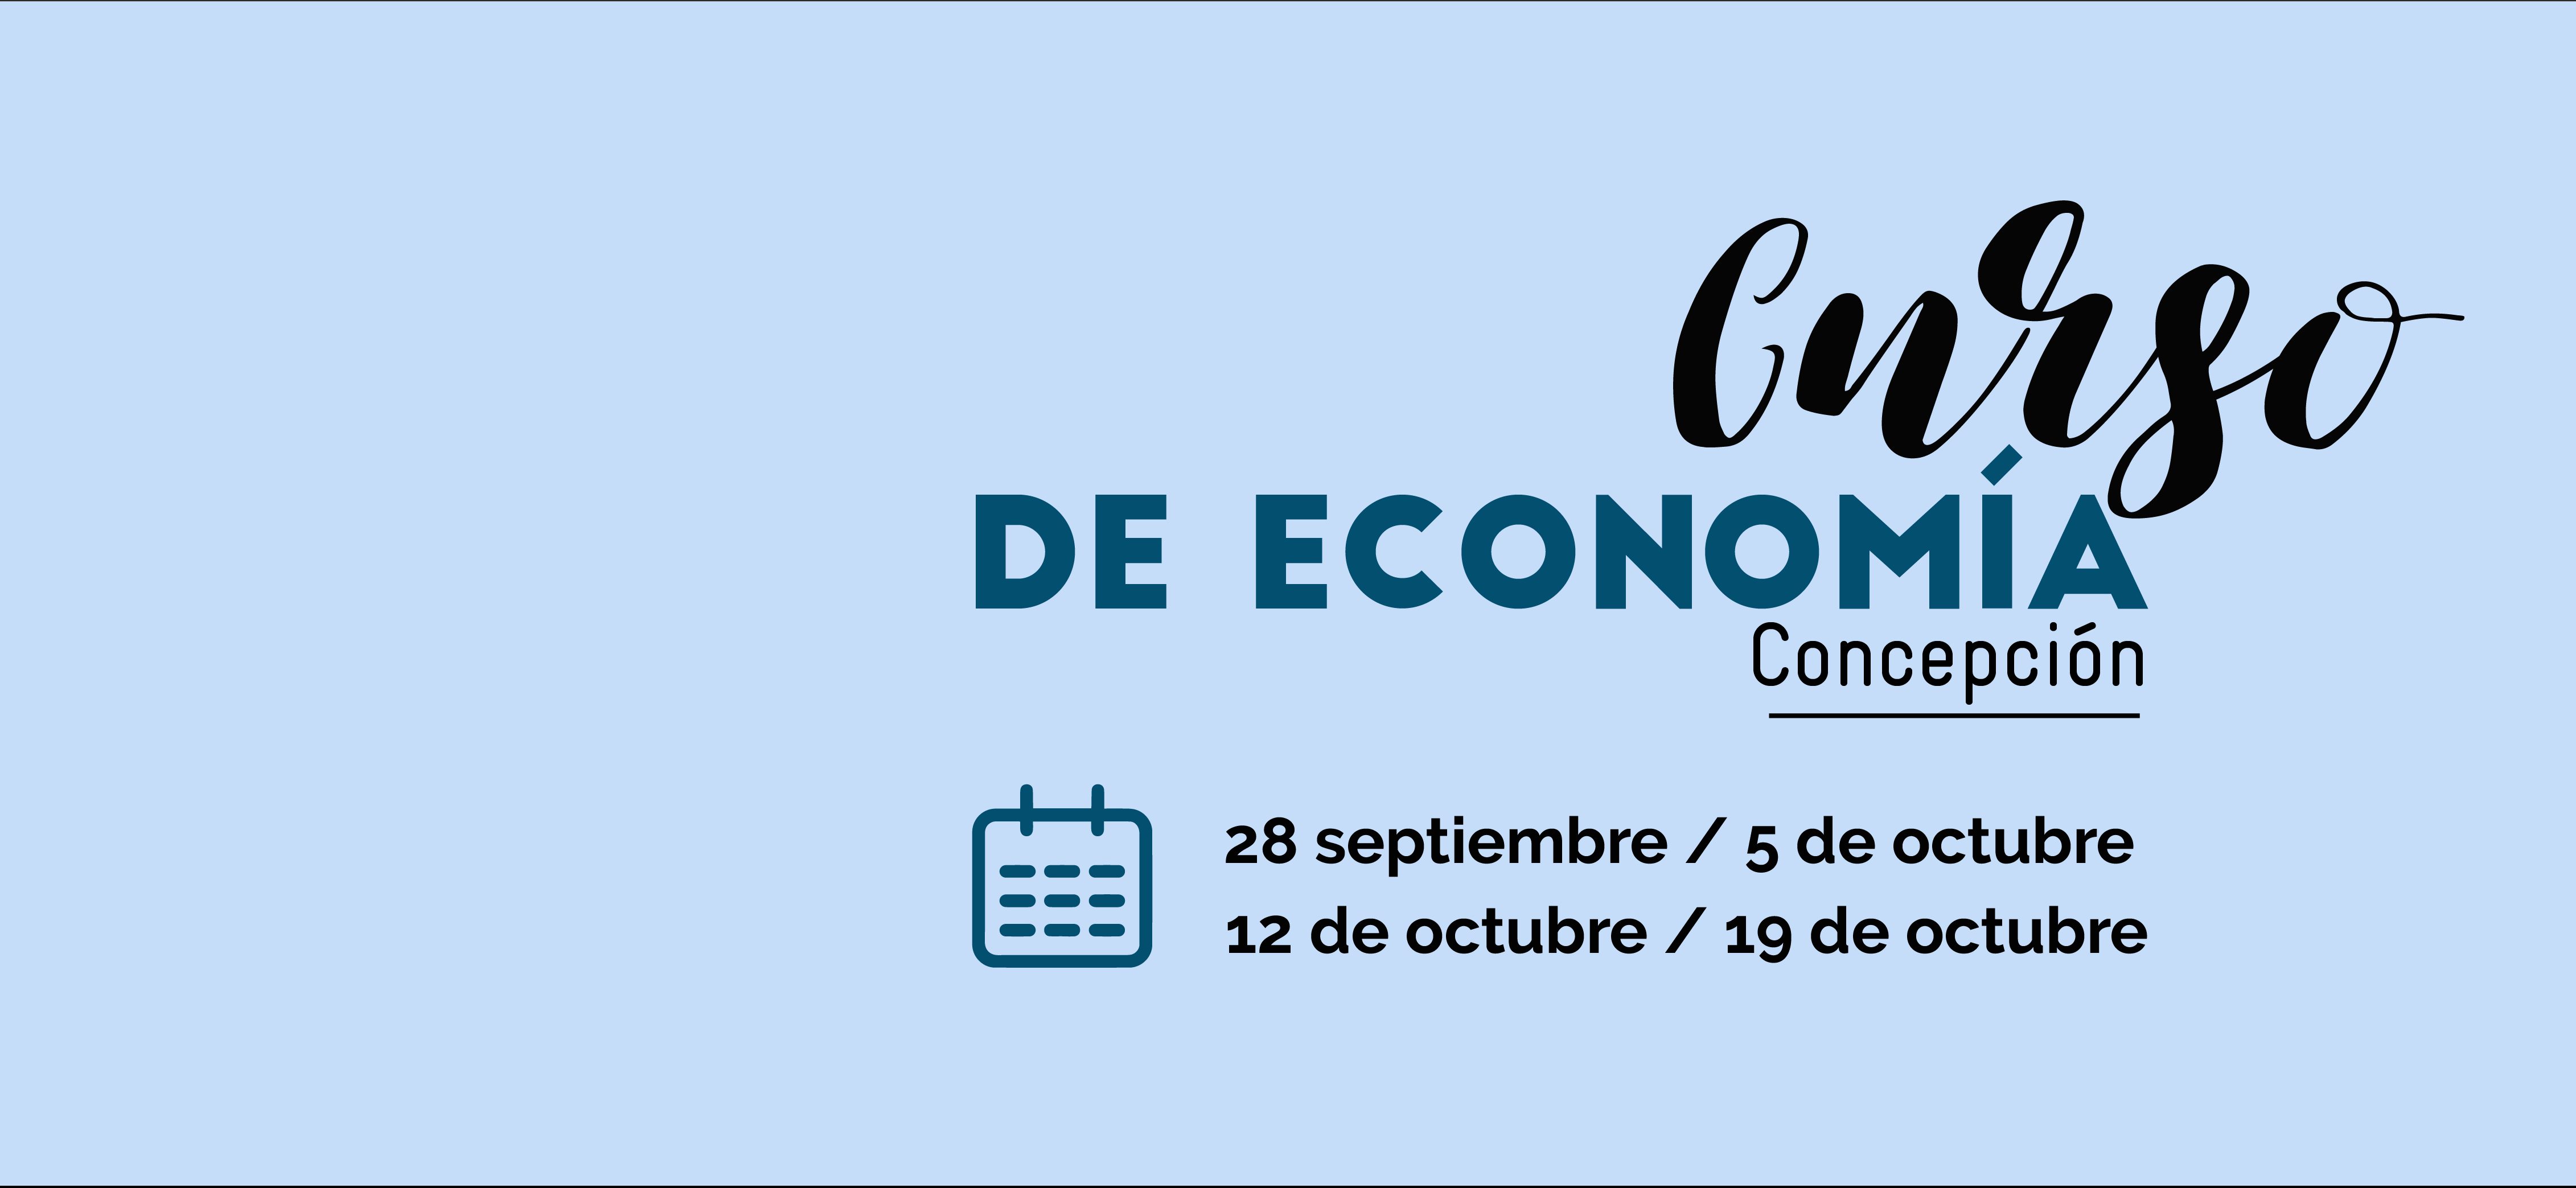 Curso de economía en Concepción